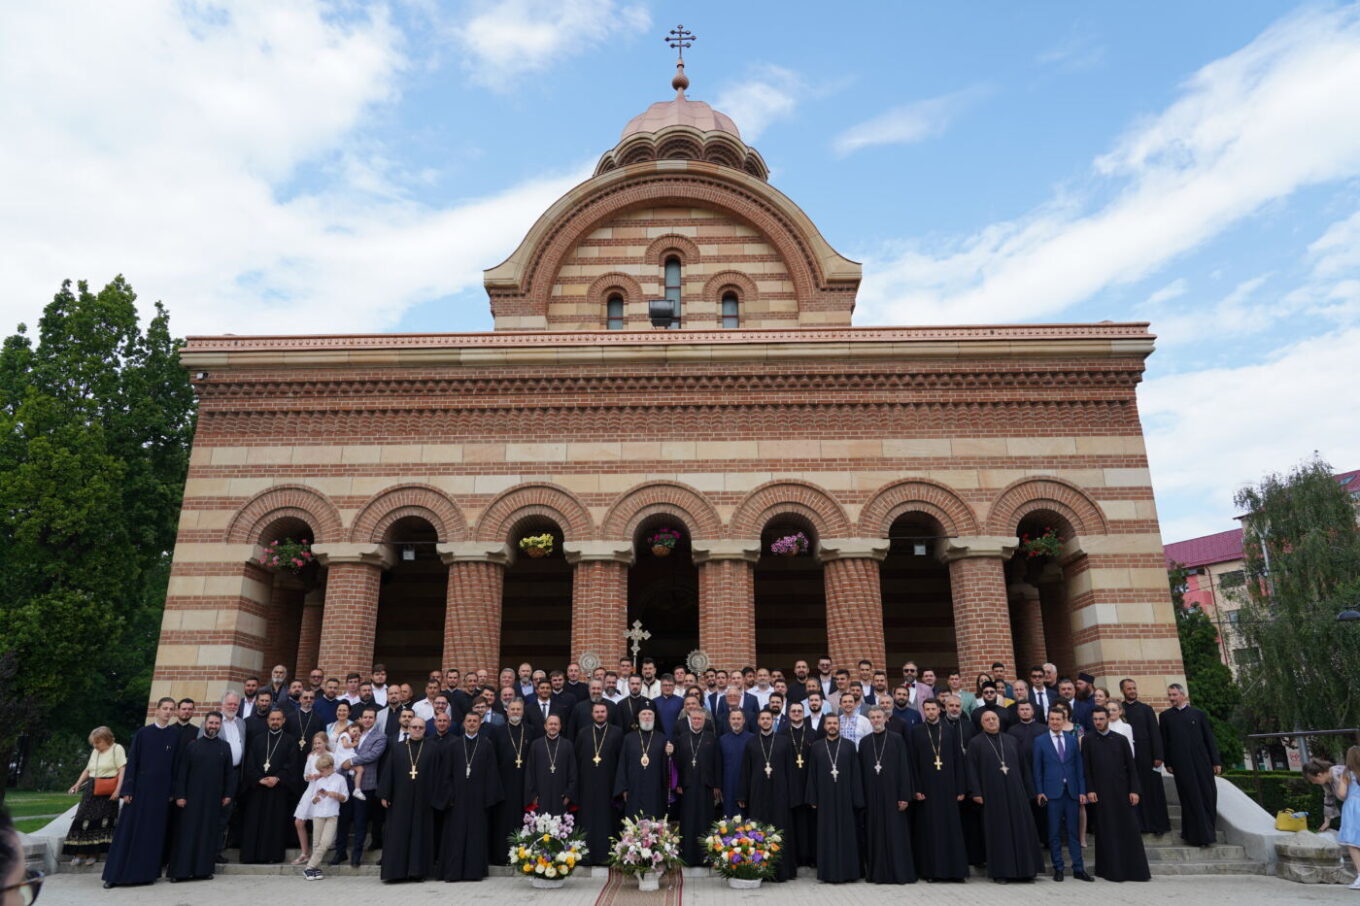 La Catedrala din Târgoviște, absolvenții Facultății de Teologie și Științele Educației, promoția 2023, au depus jurământul de credință